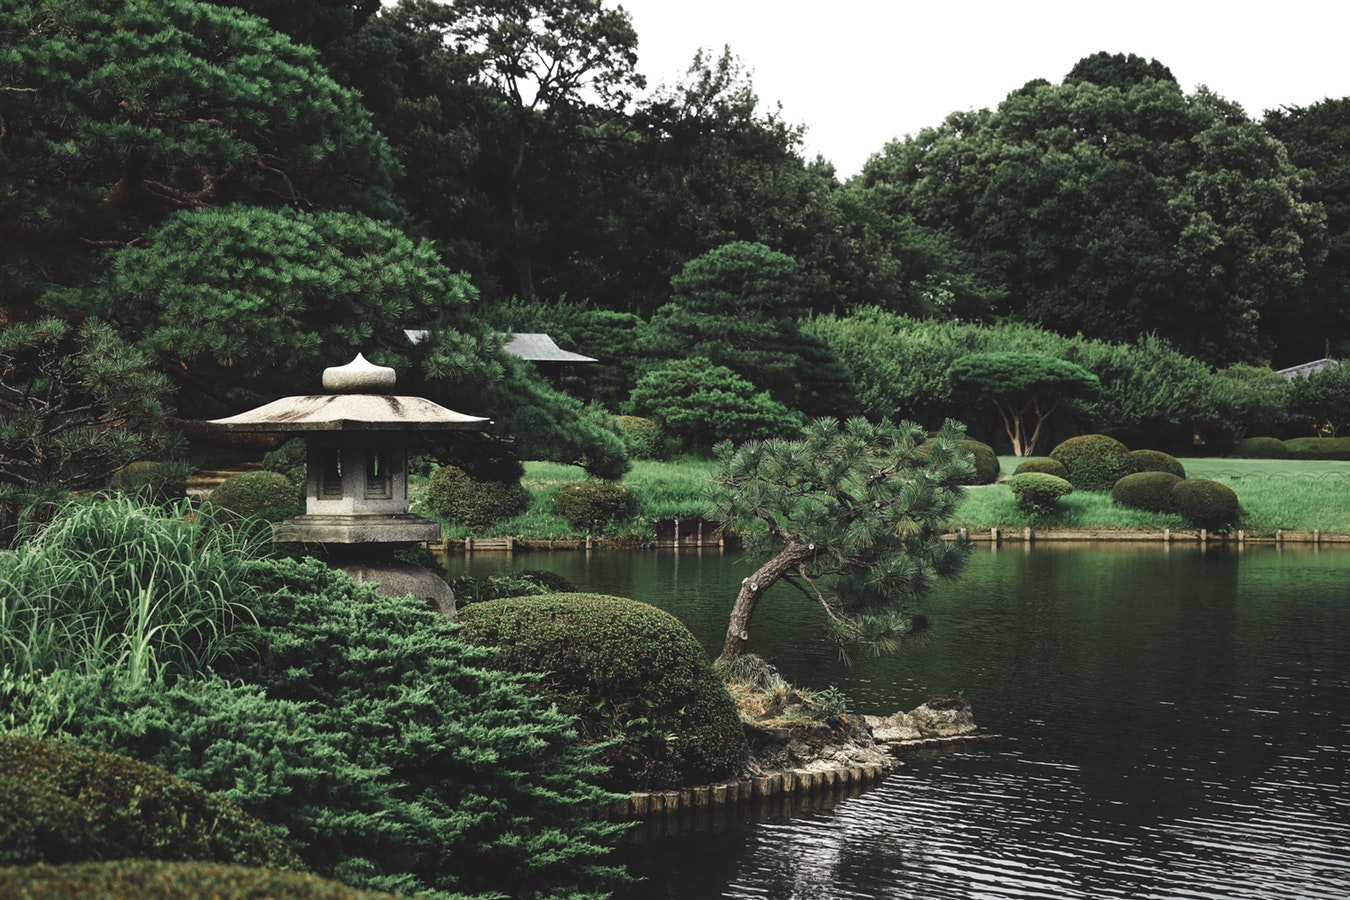 park lake and zen garden